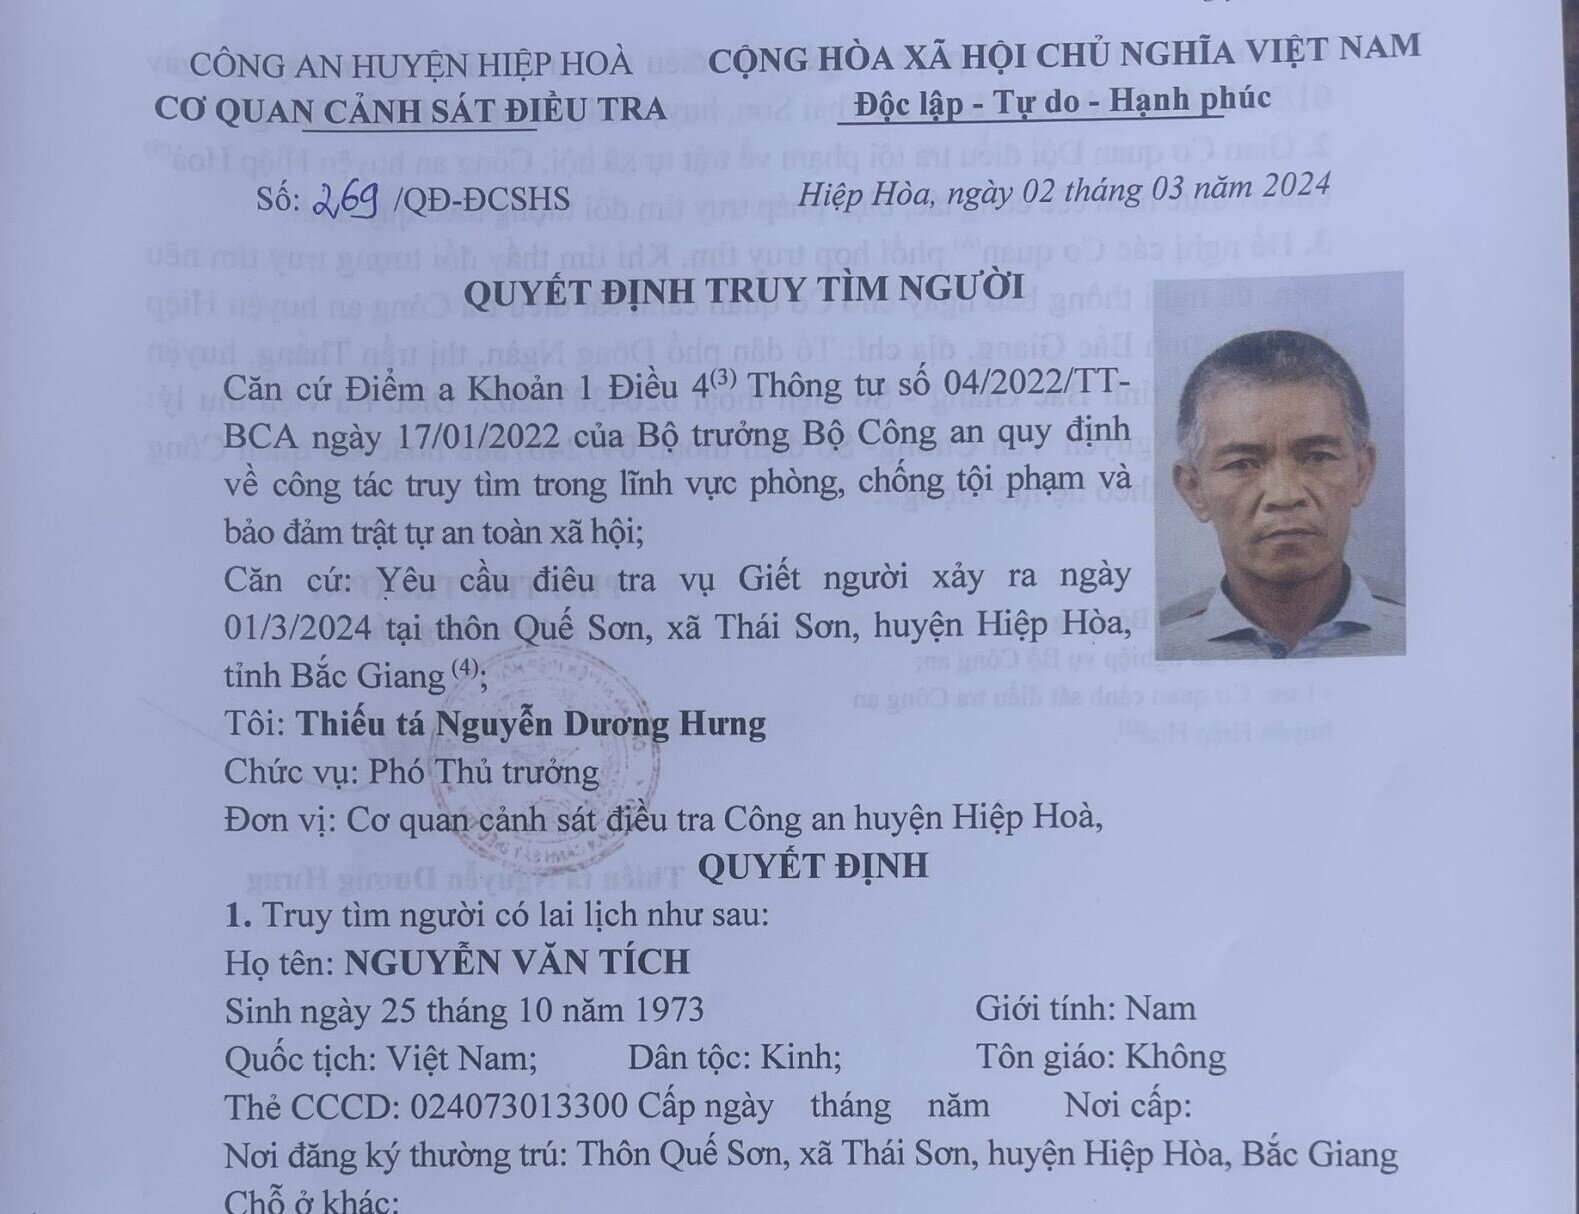 Quyết định truy tìm Nguyễn Văn Tích của Công an huyện Hiệp Hòa, Bắc Giang.